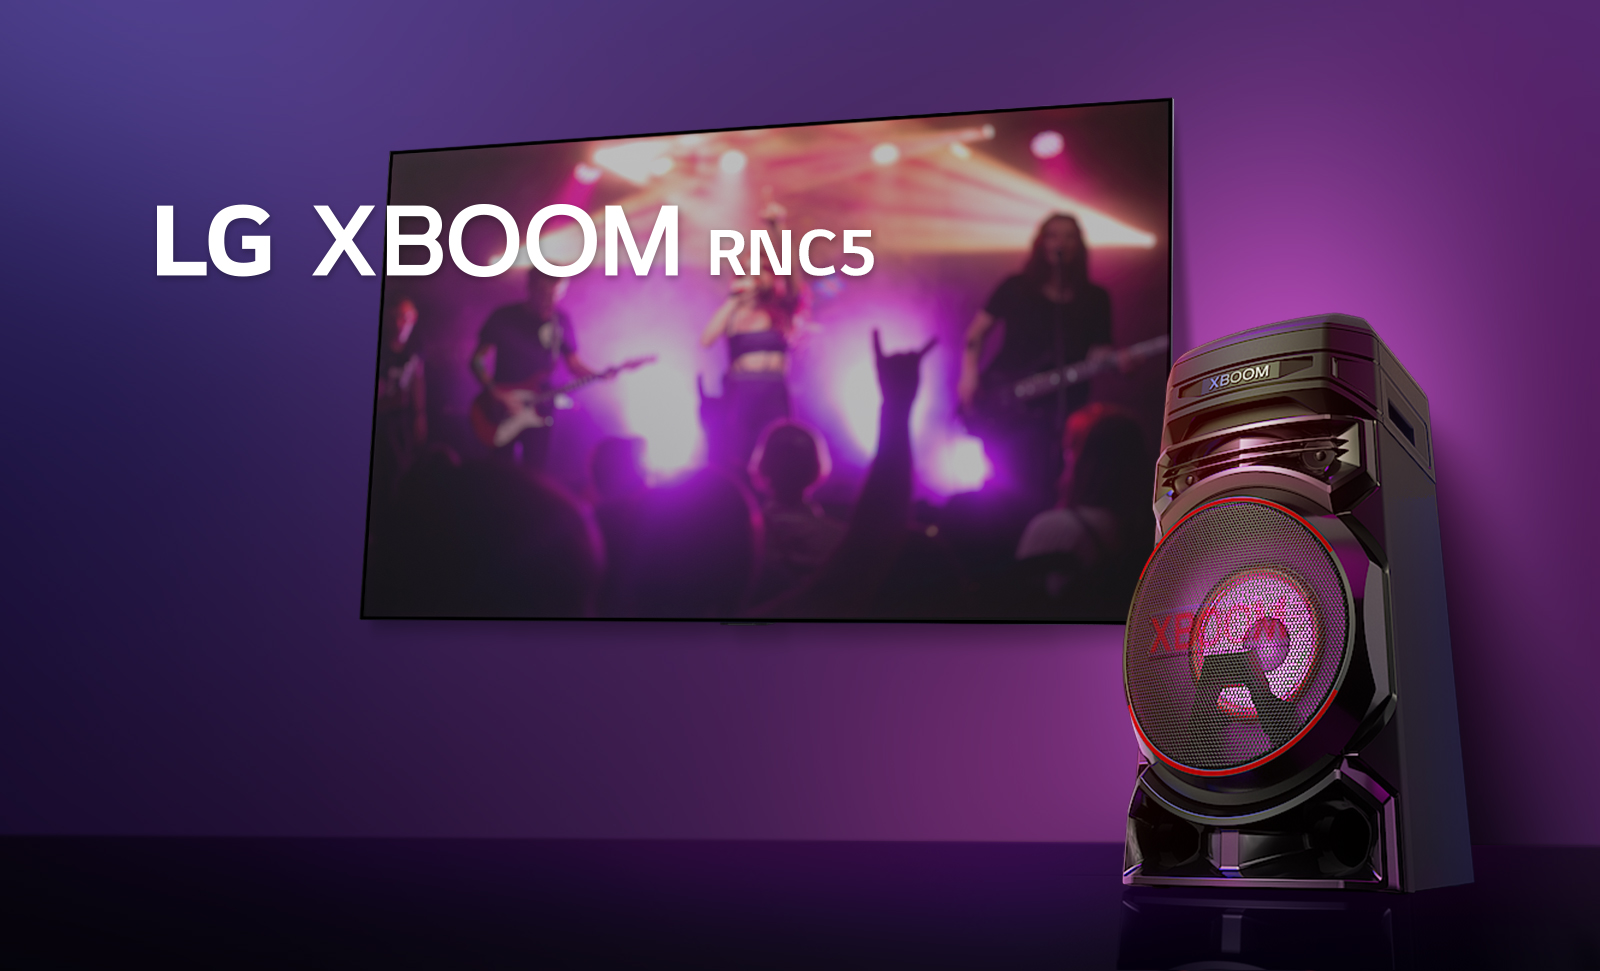 Vue en contreplongée du côté droit de l’enceinte LG XBOOM RNC5 sur fond violet.  L’éclairage du XBOOM est également violet. Et un écran de télévision diffuse un concert.